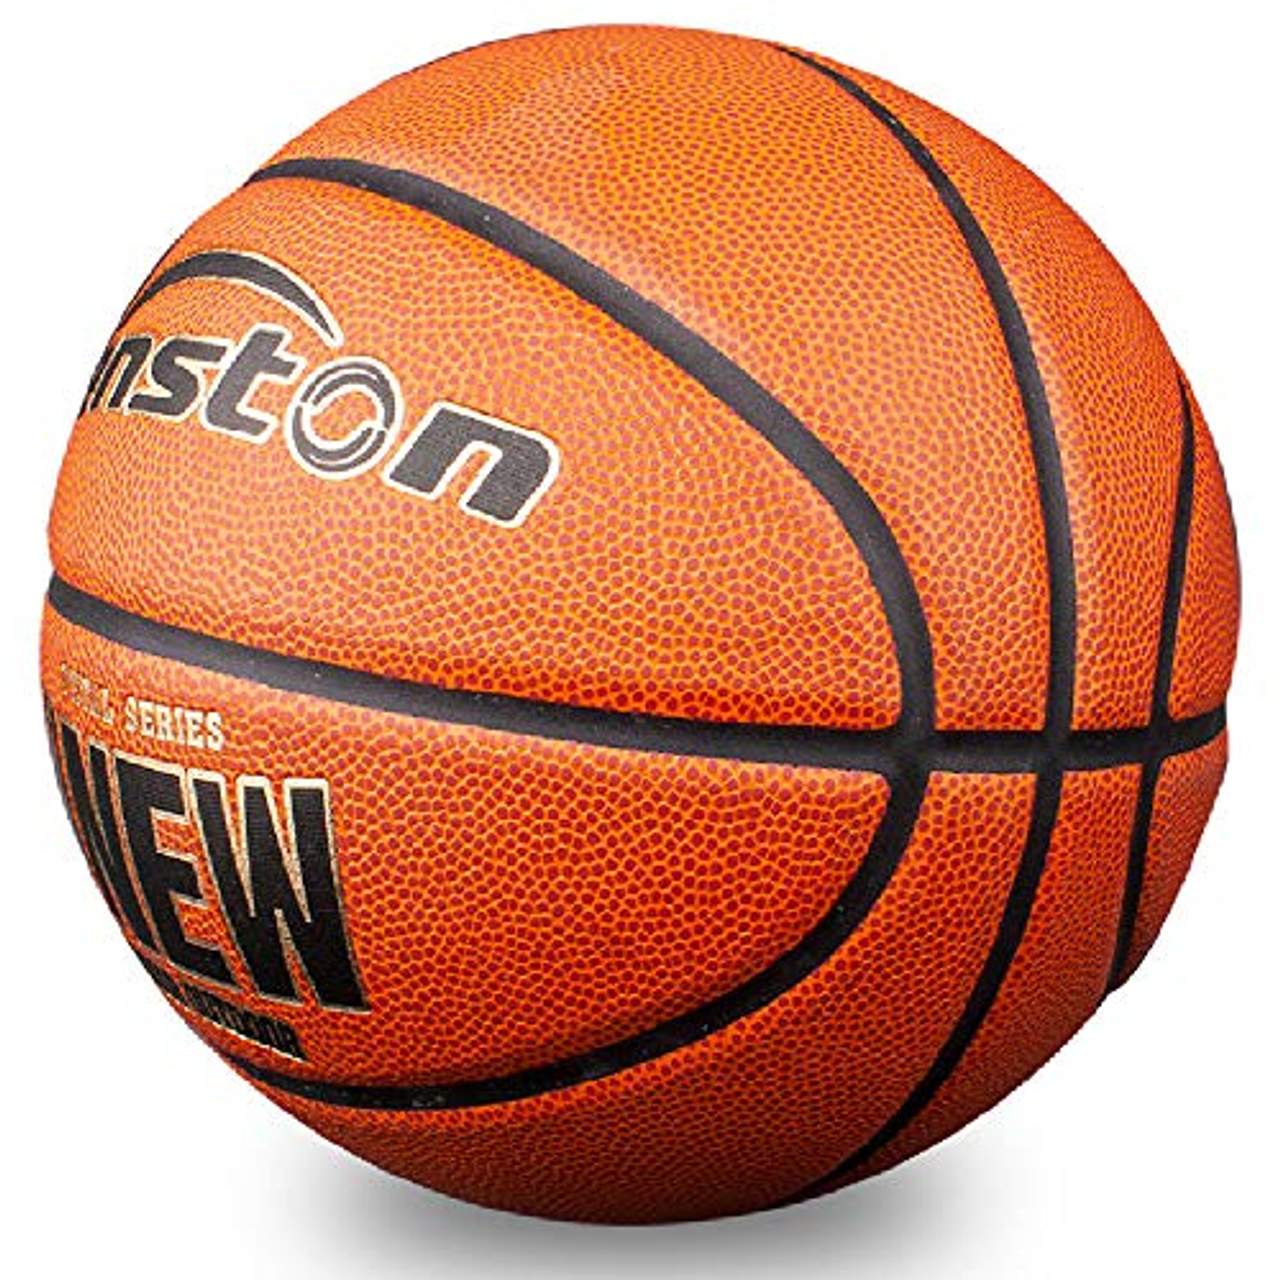 Senston Indoor Outdoor Basketball Größe 7 Synthetik-Leder Arena Training